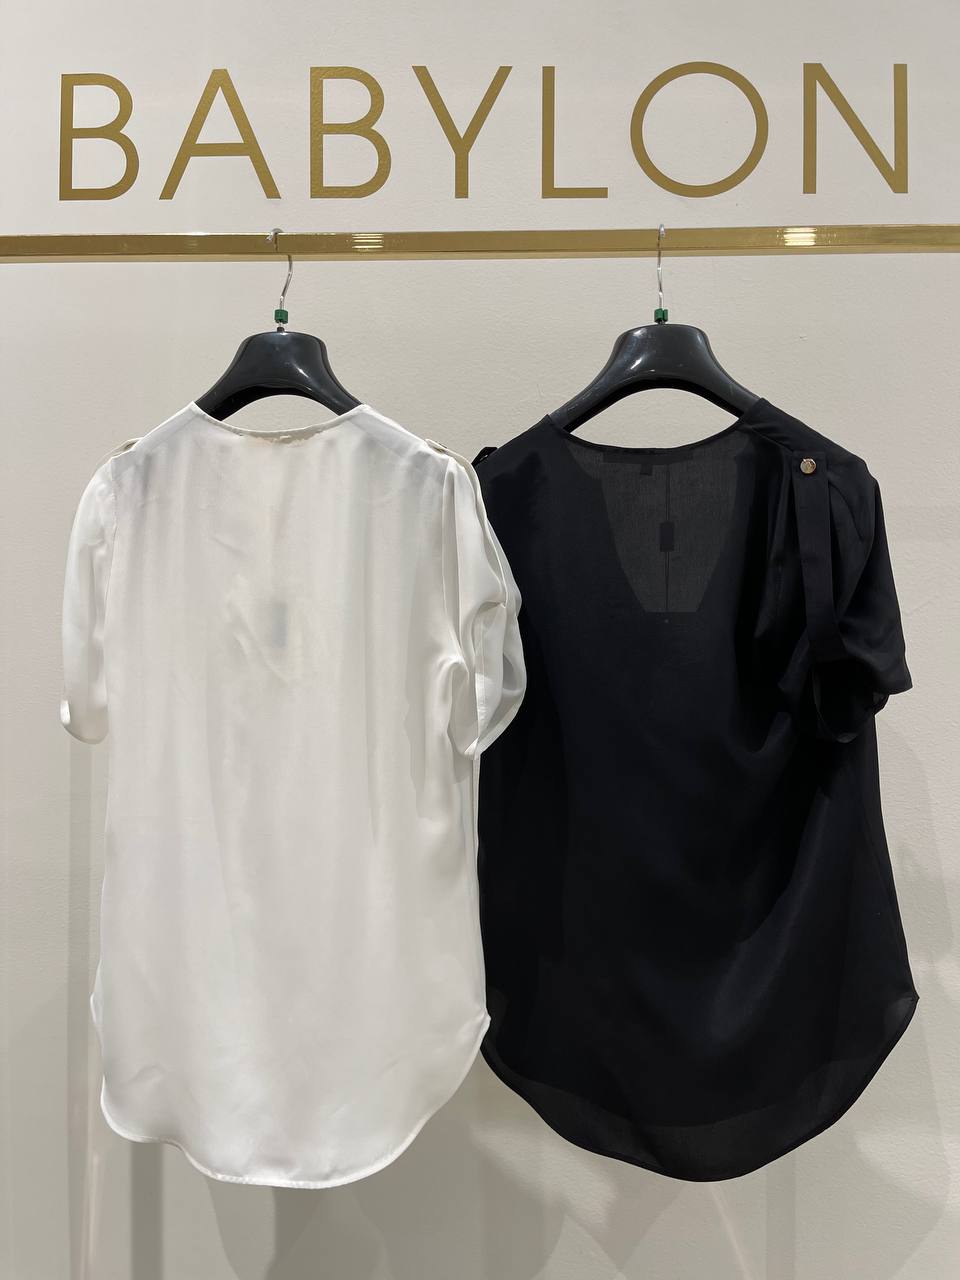 Итальянская одежда, бренд Babylon, арт. 73262204